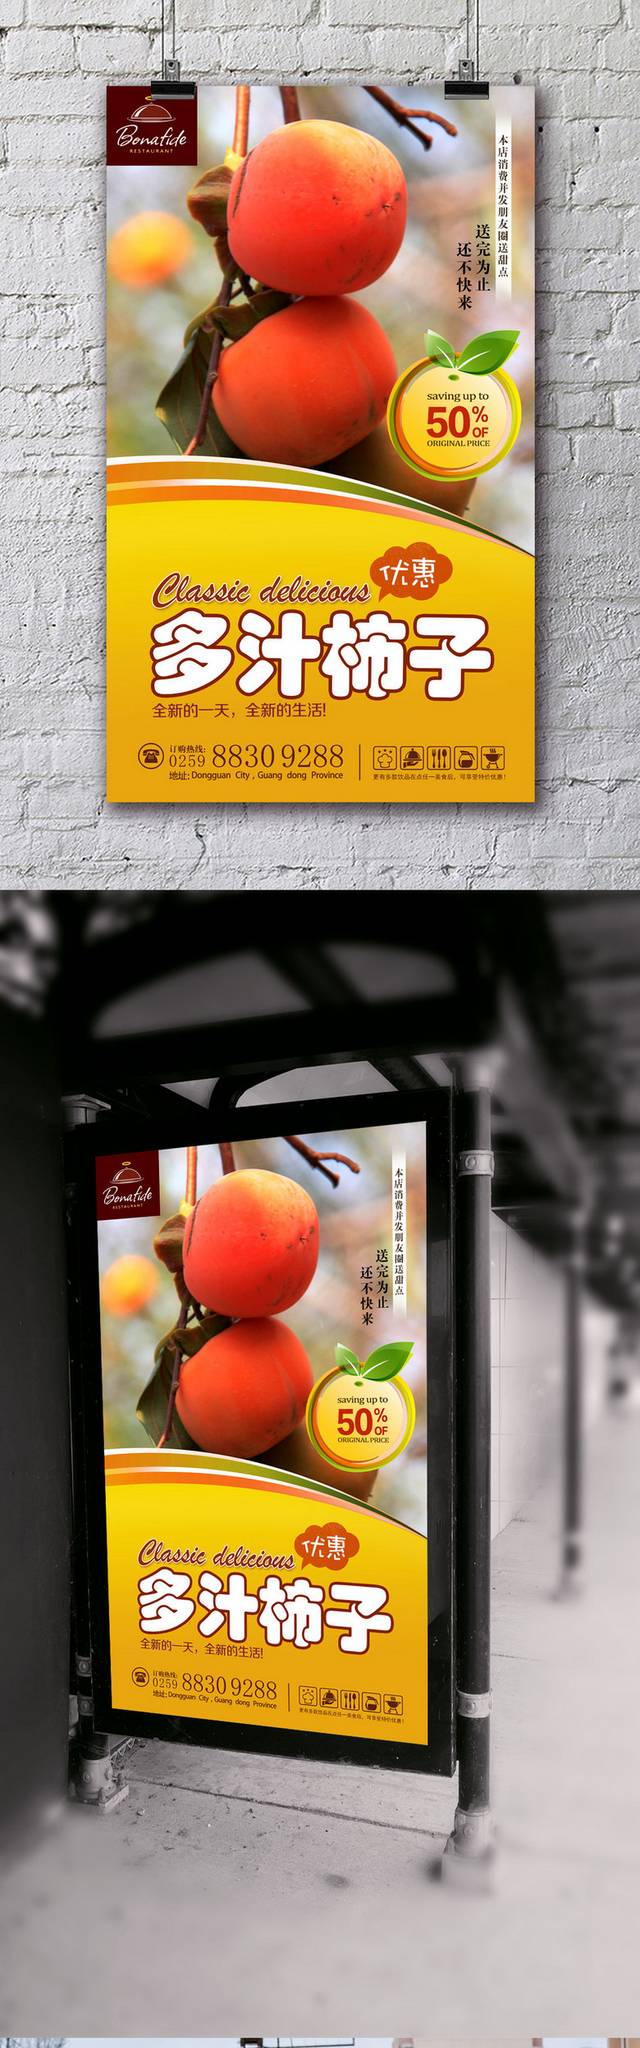 高清柿子宣传海报设计psd